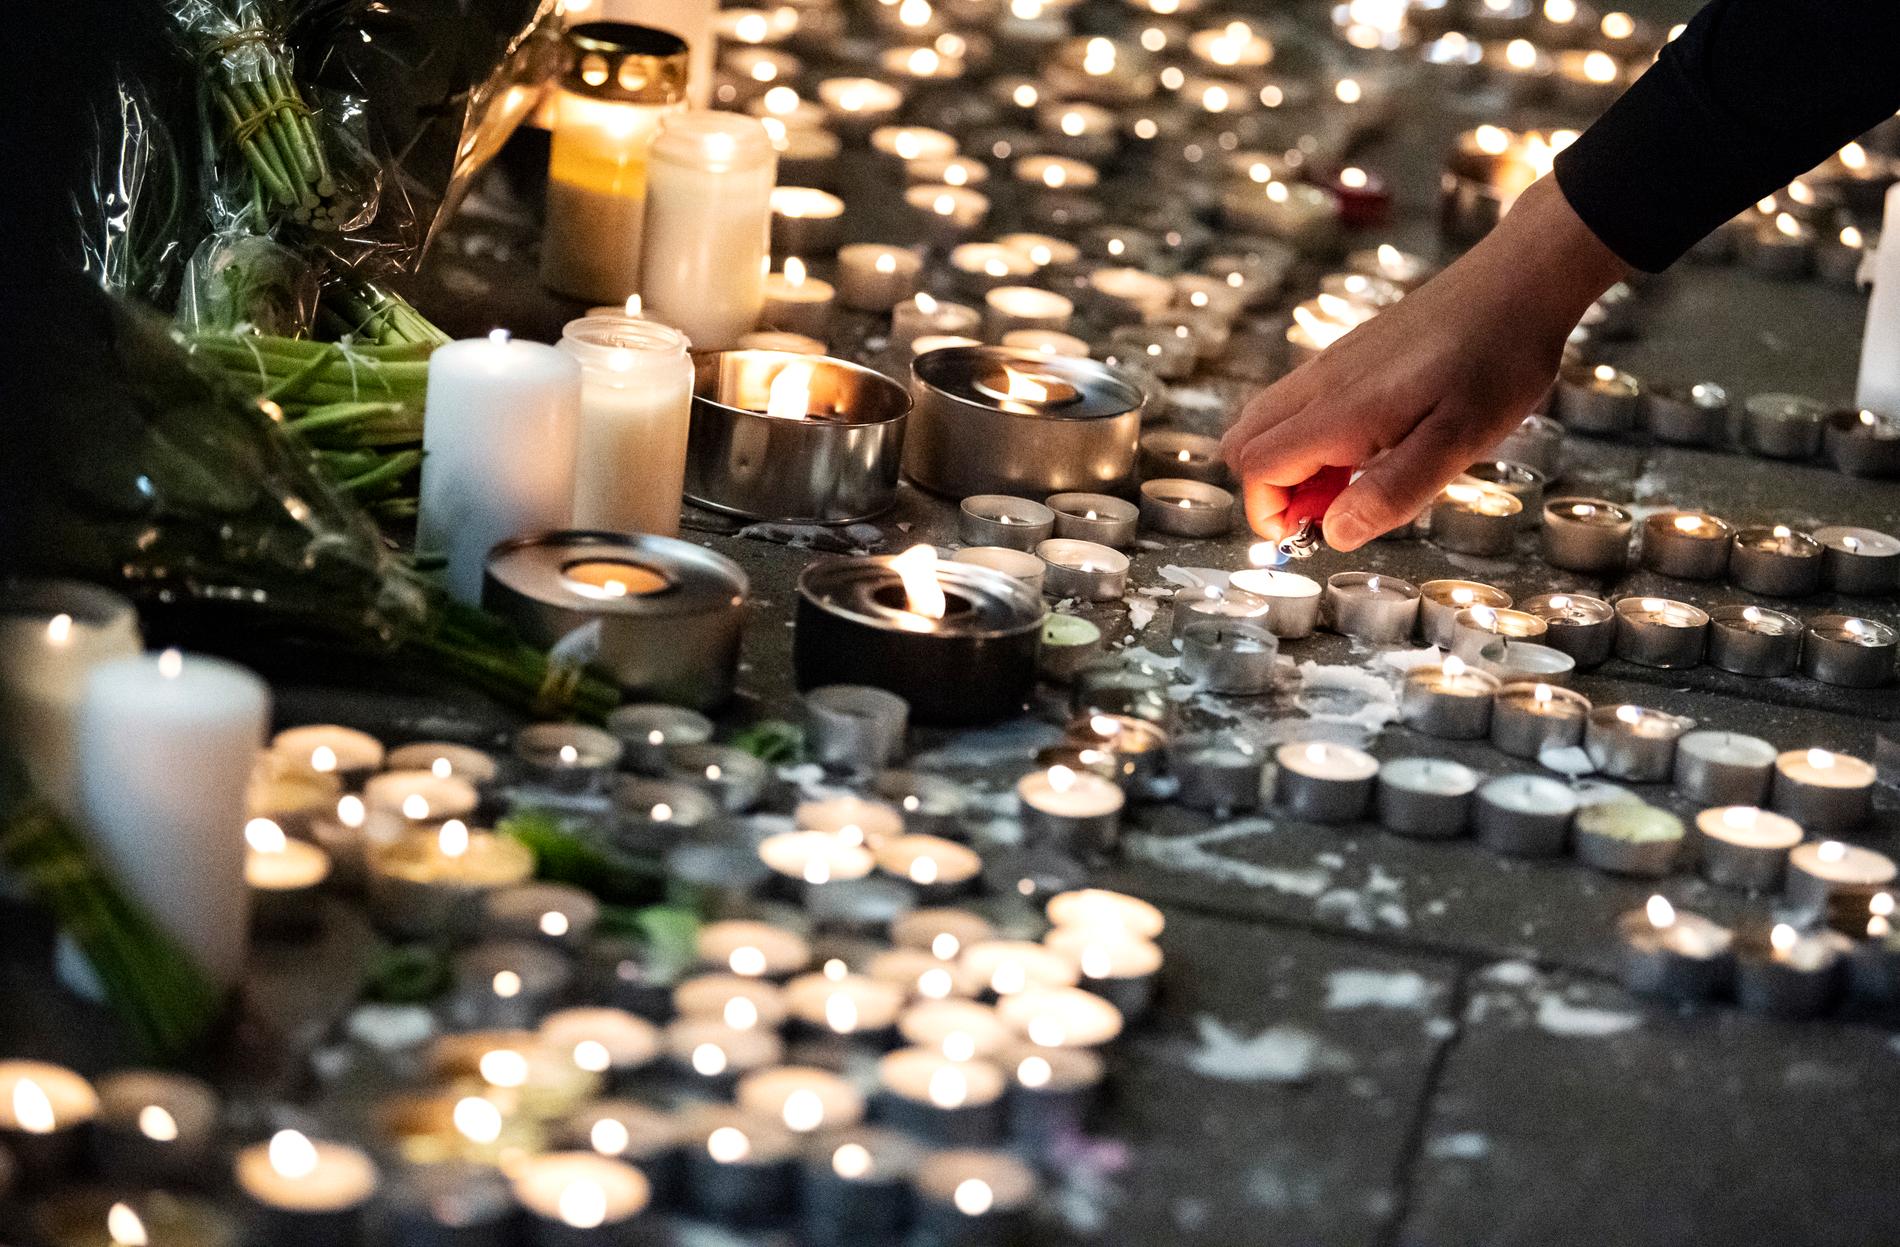 Jaffar sköts till döds i helgen i Malmö vid en pizzeria nära Möllevångstorget. Han var bara 15 år gammal.  